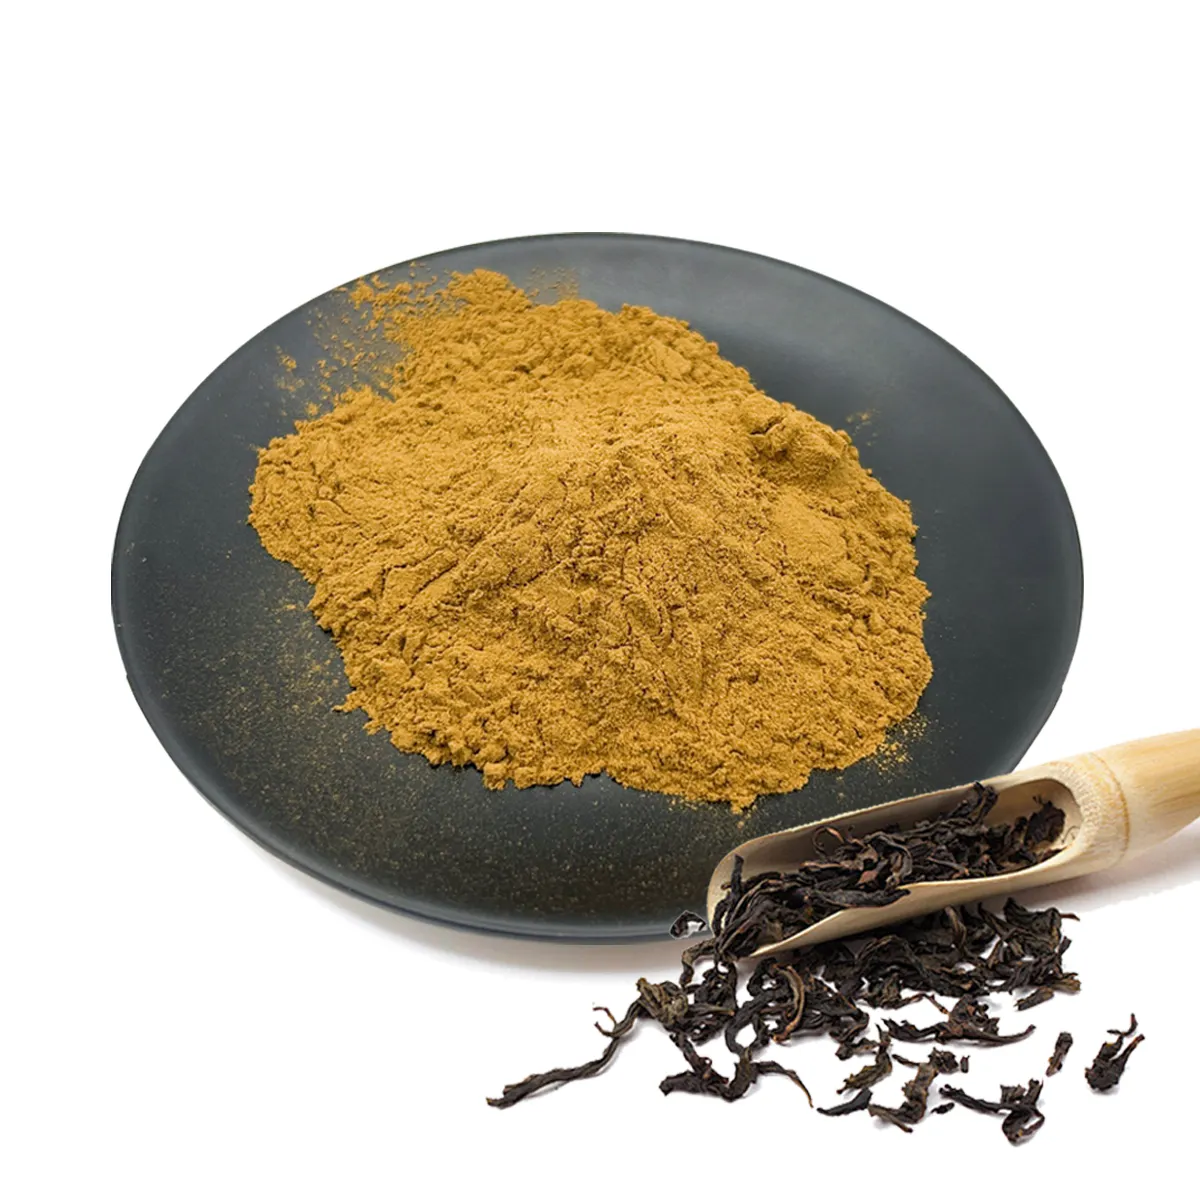 Extrato de chá preto natural de qualidade alimentar original em pó fornecedores chá preto instantâneo solúvel em água em pó para alimentos saudáveis chá com leite